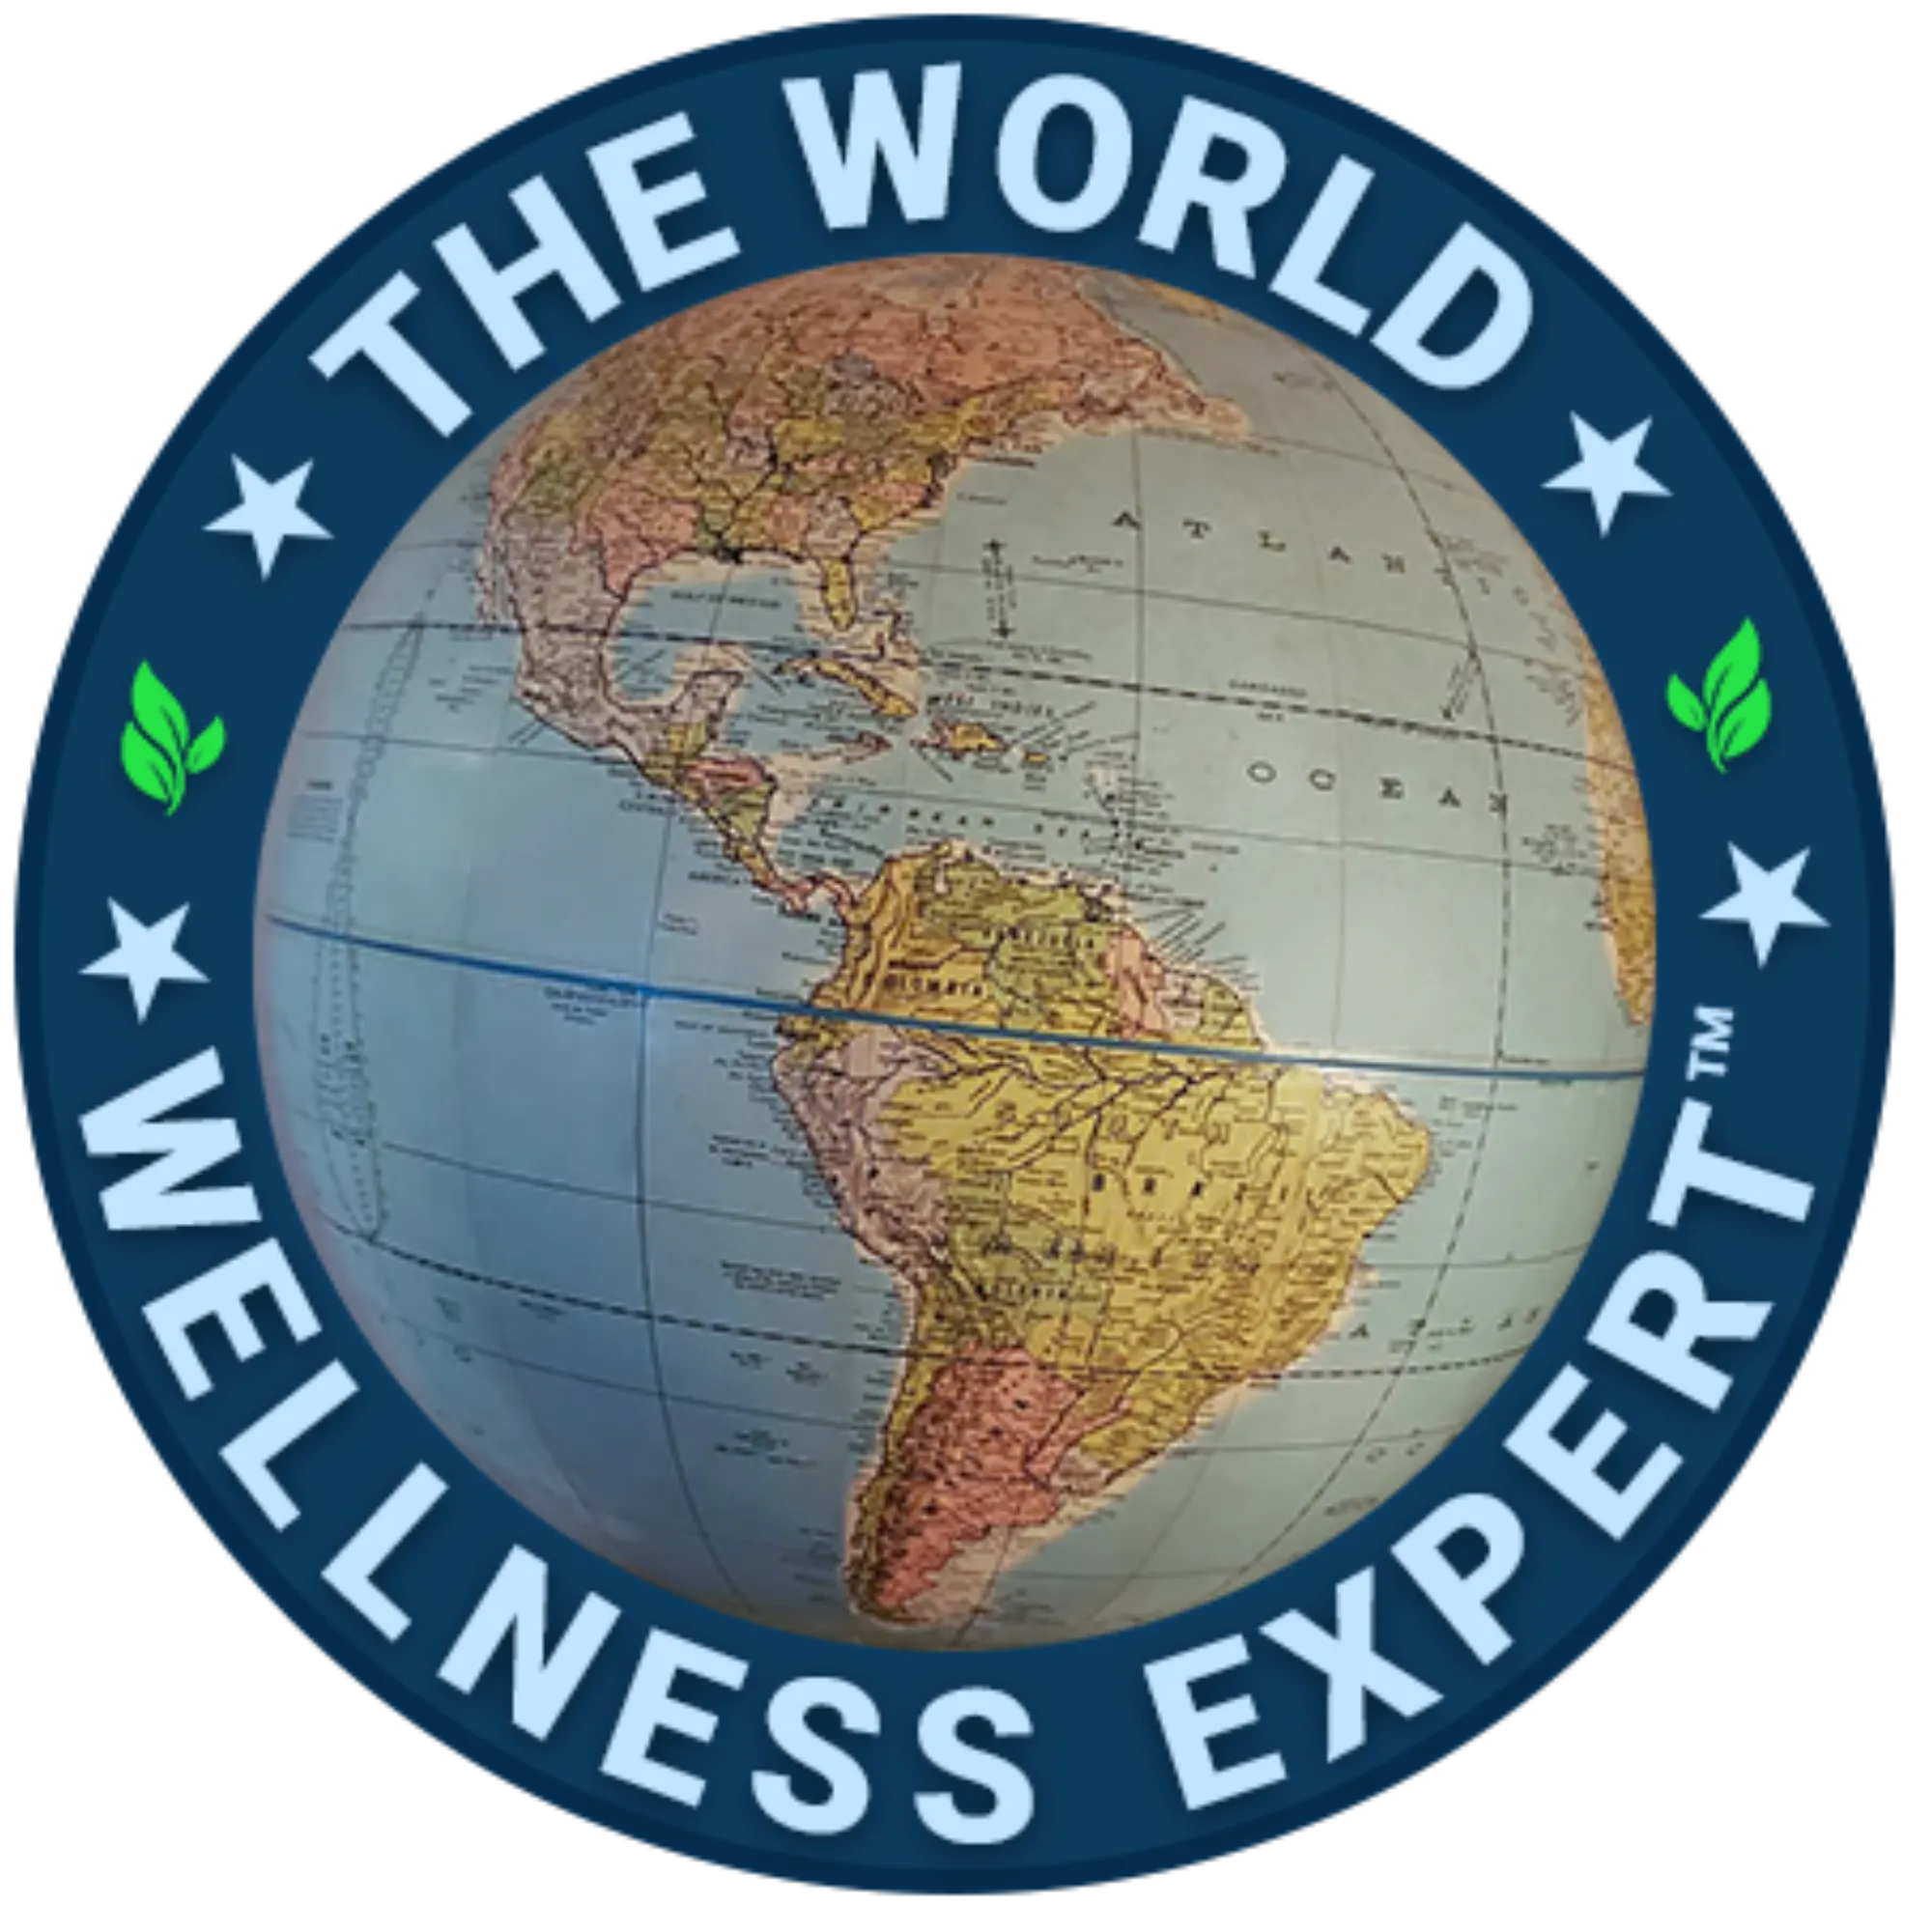 world wellness expert